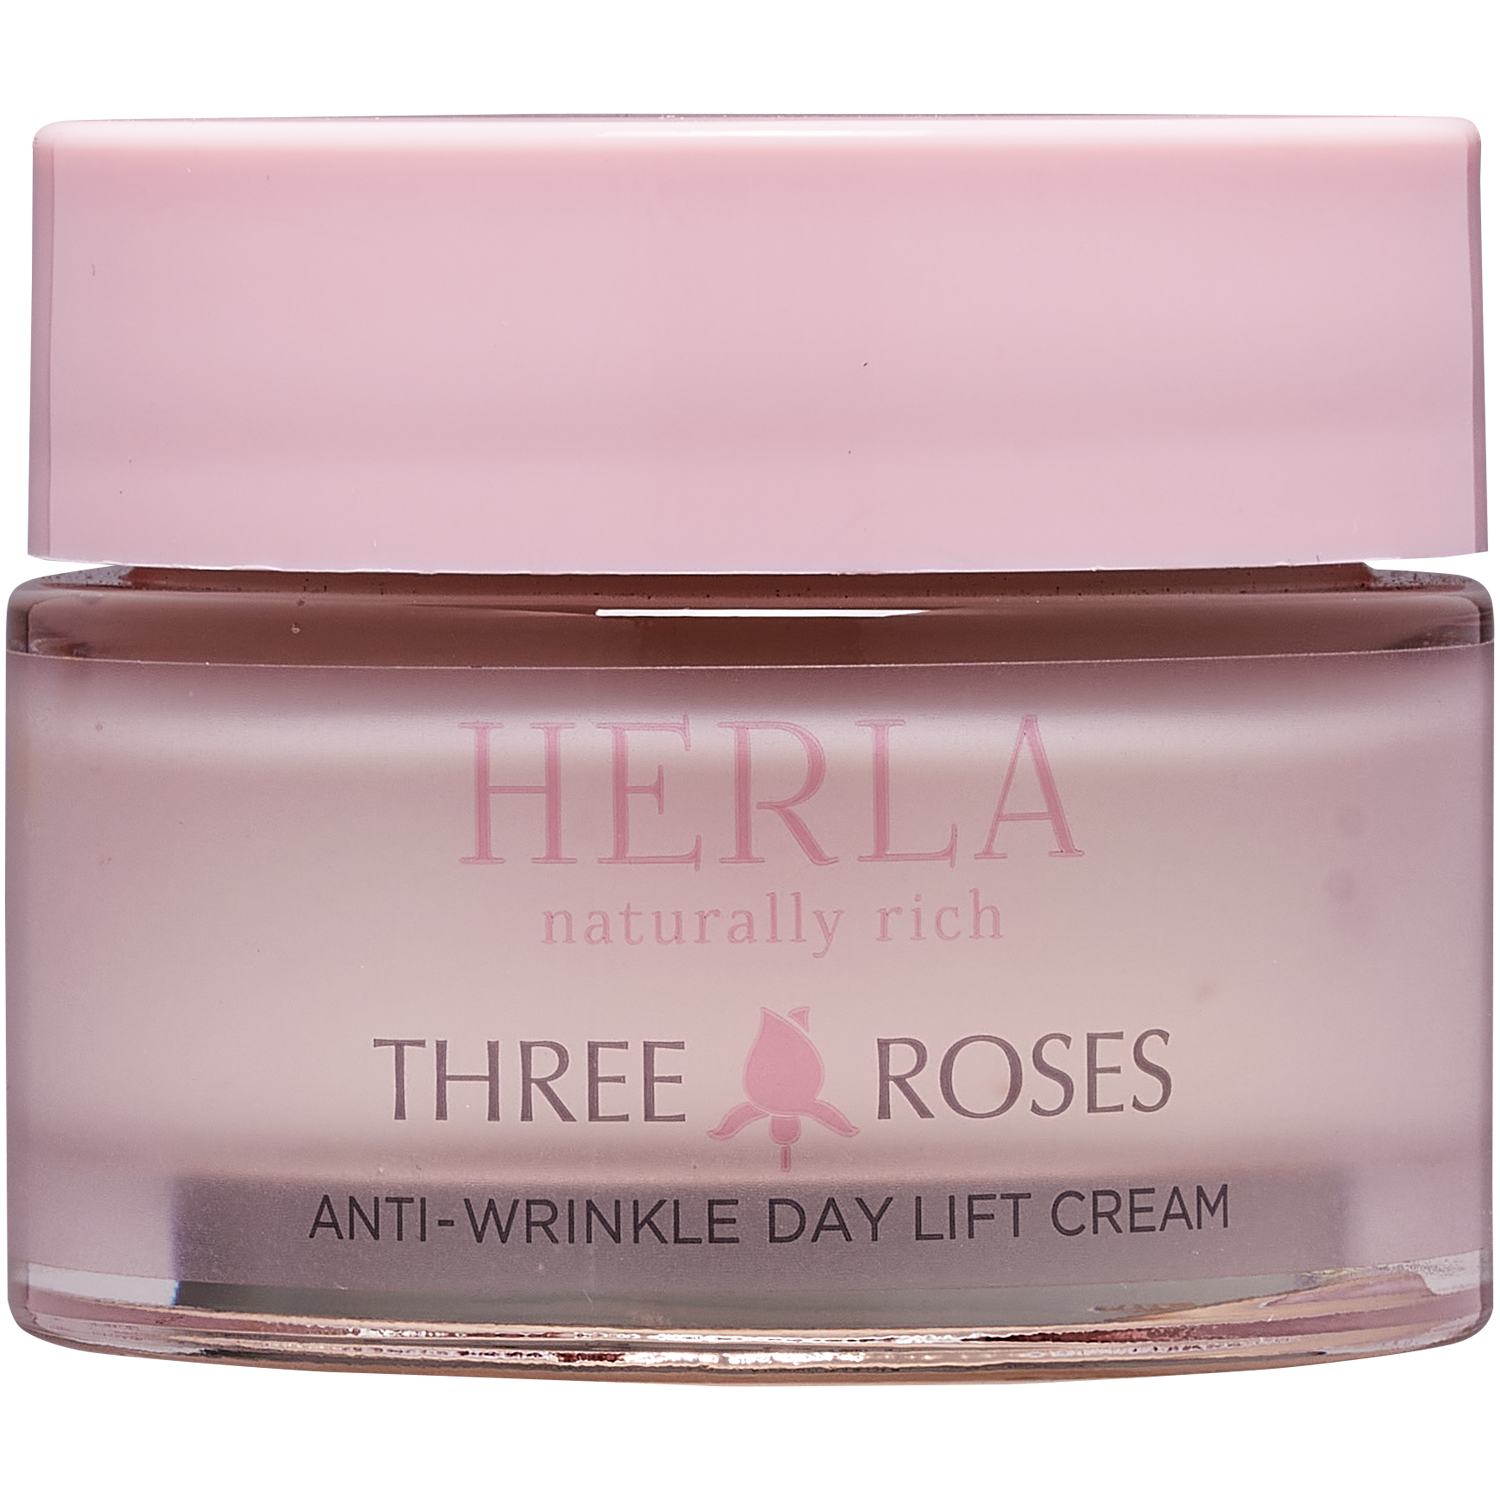 Дневной регенерирующий крем для лица против морщин Herla Three Roses, 50 мл цена и фото